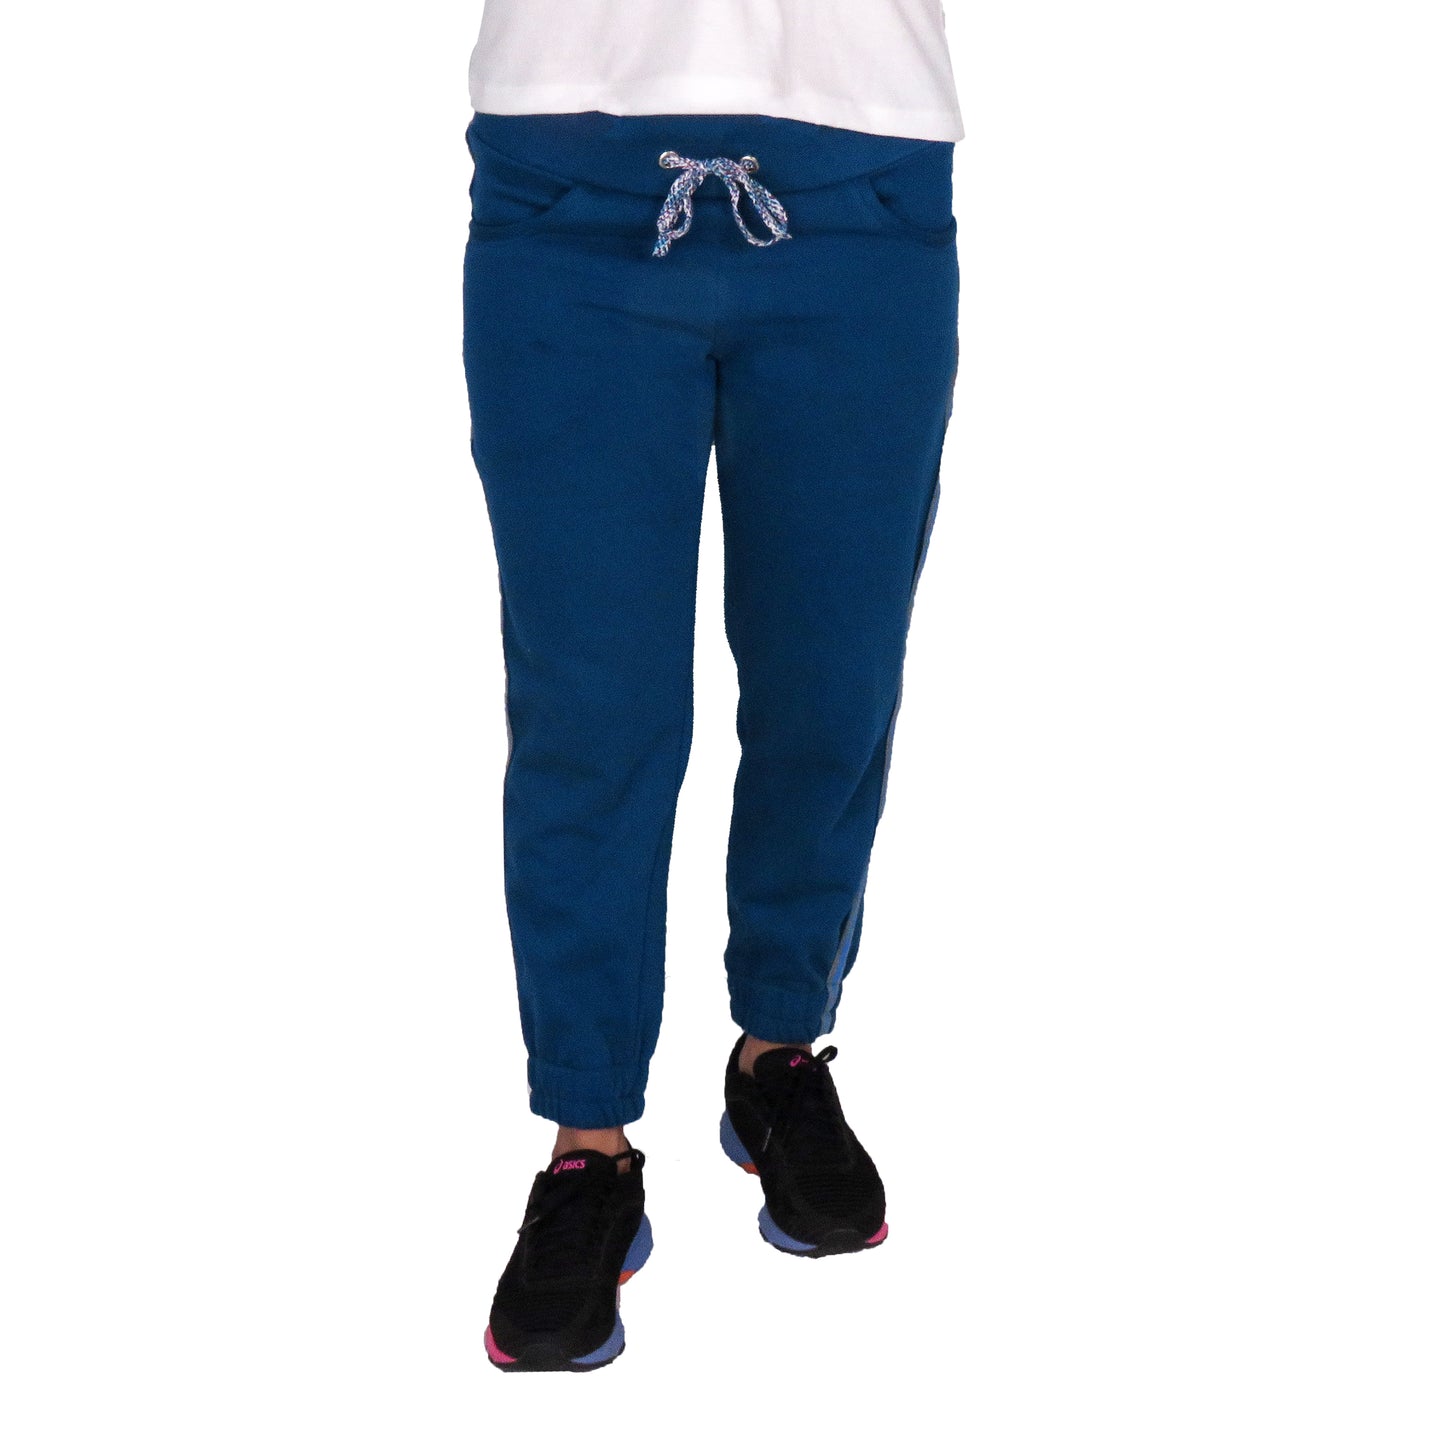 Blue Fleece Lower With Side Stripe & Pockets